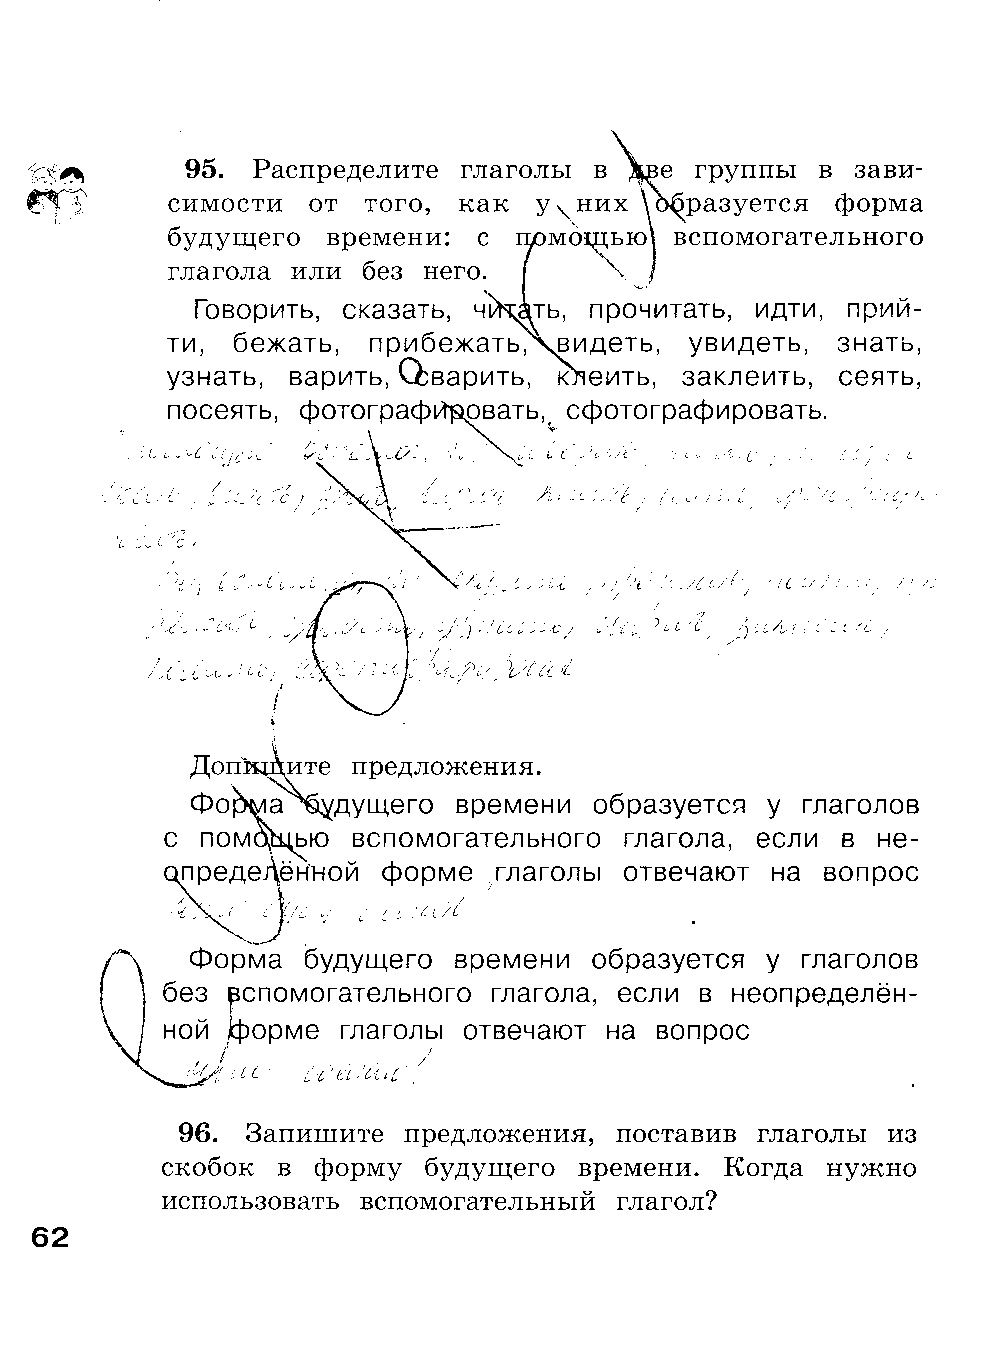 ГДЗ Русский язык 4 класс - стр. 62